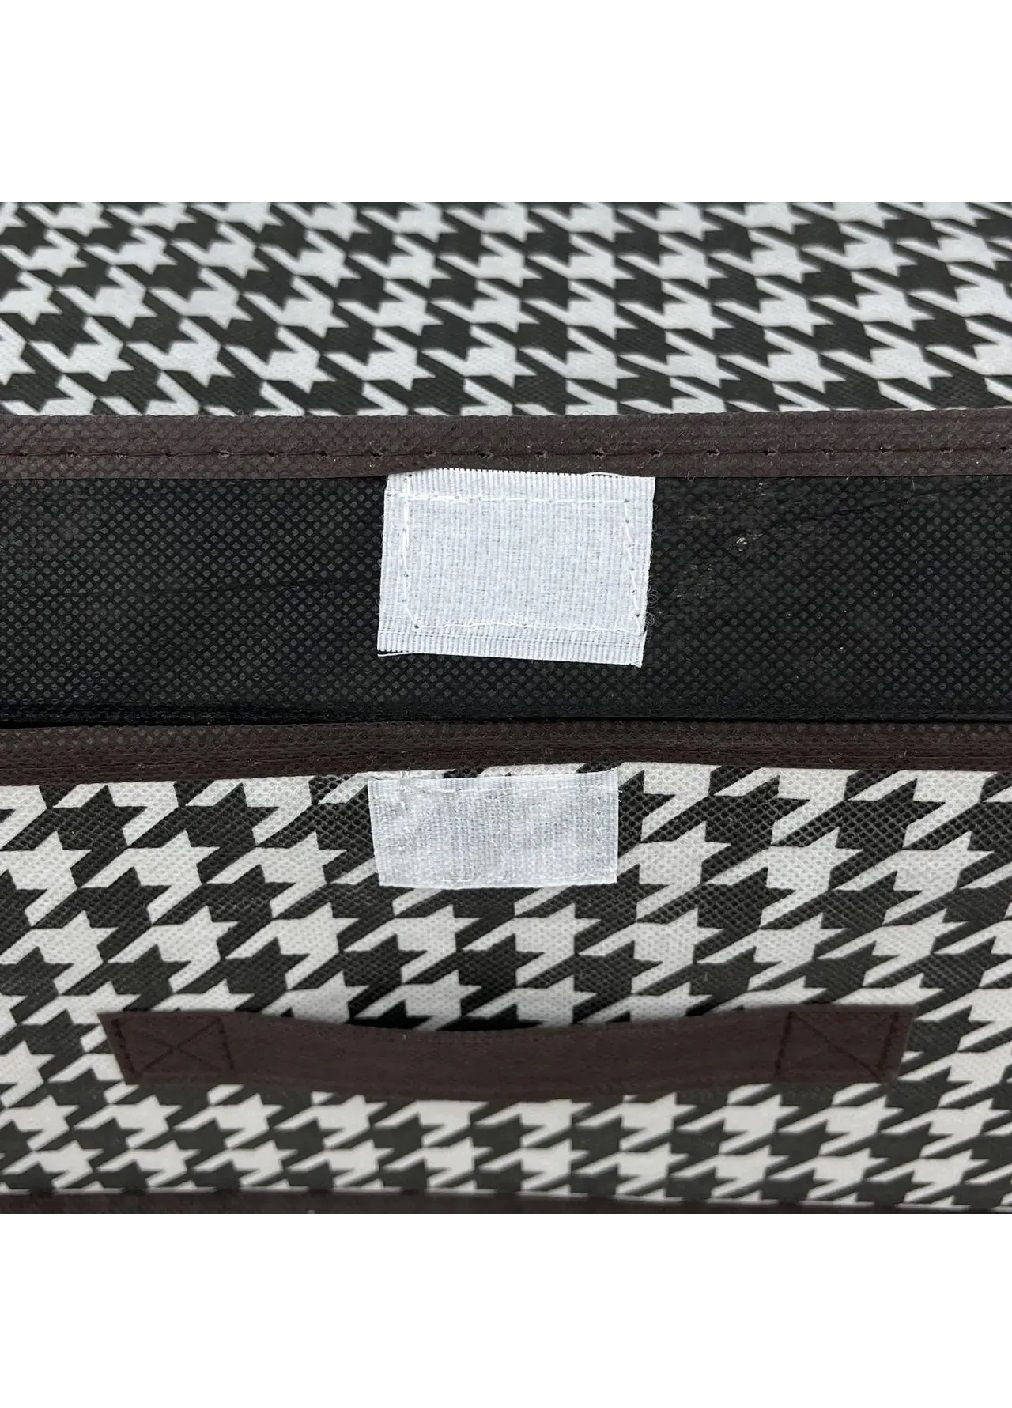 Комплект набор органайзеров боксов для хранения одежды личных вещей сумок 2 шт (476561-Prob) Бежевый с коричневым узором Unbranded (284281725)